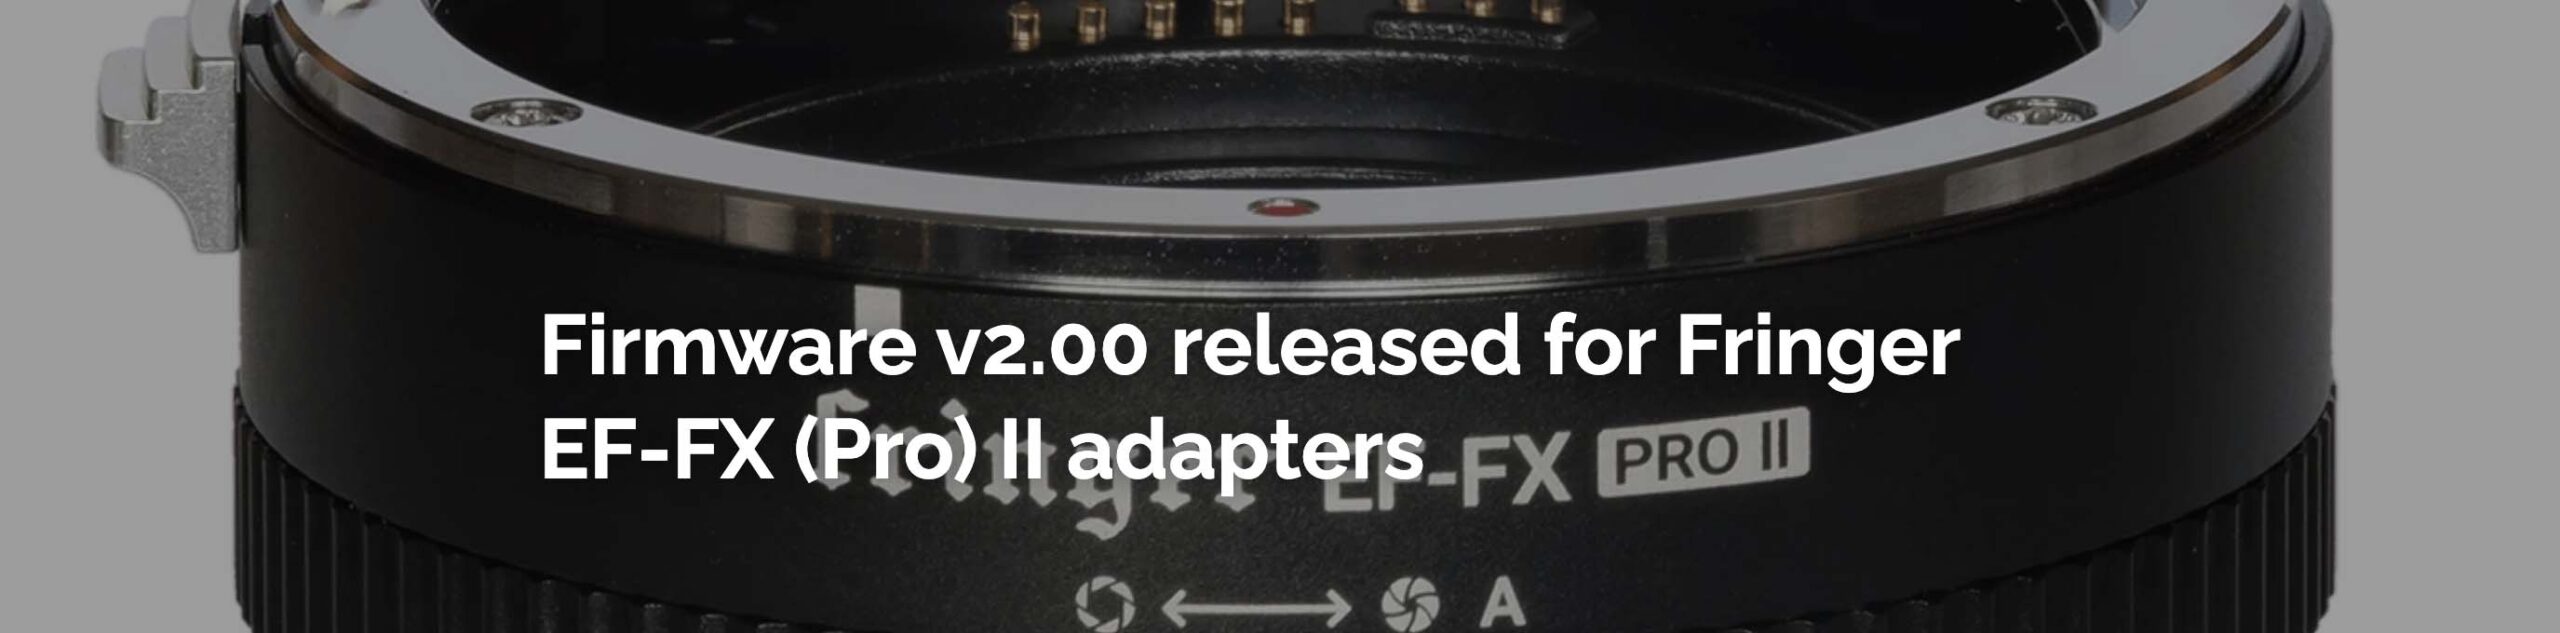 Fringer EF-FX (Pro) II Firmware v2.00 Released - Fuji Addict